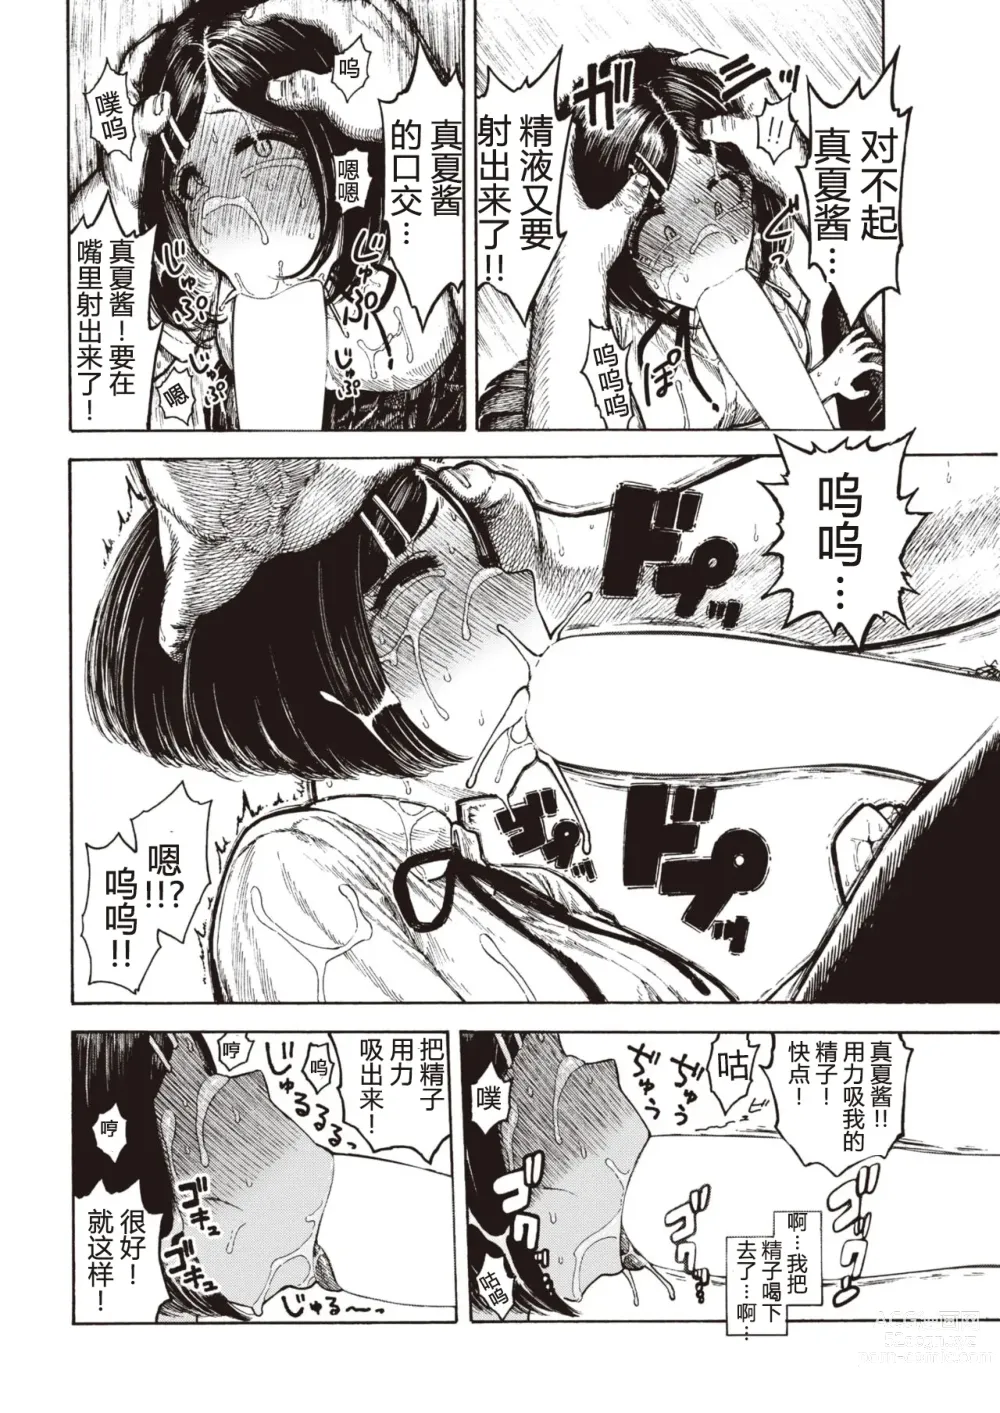 Page 14 of manga Manatsu-chan no Benkyoukai